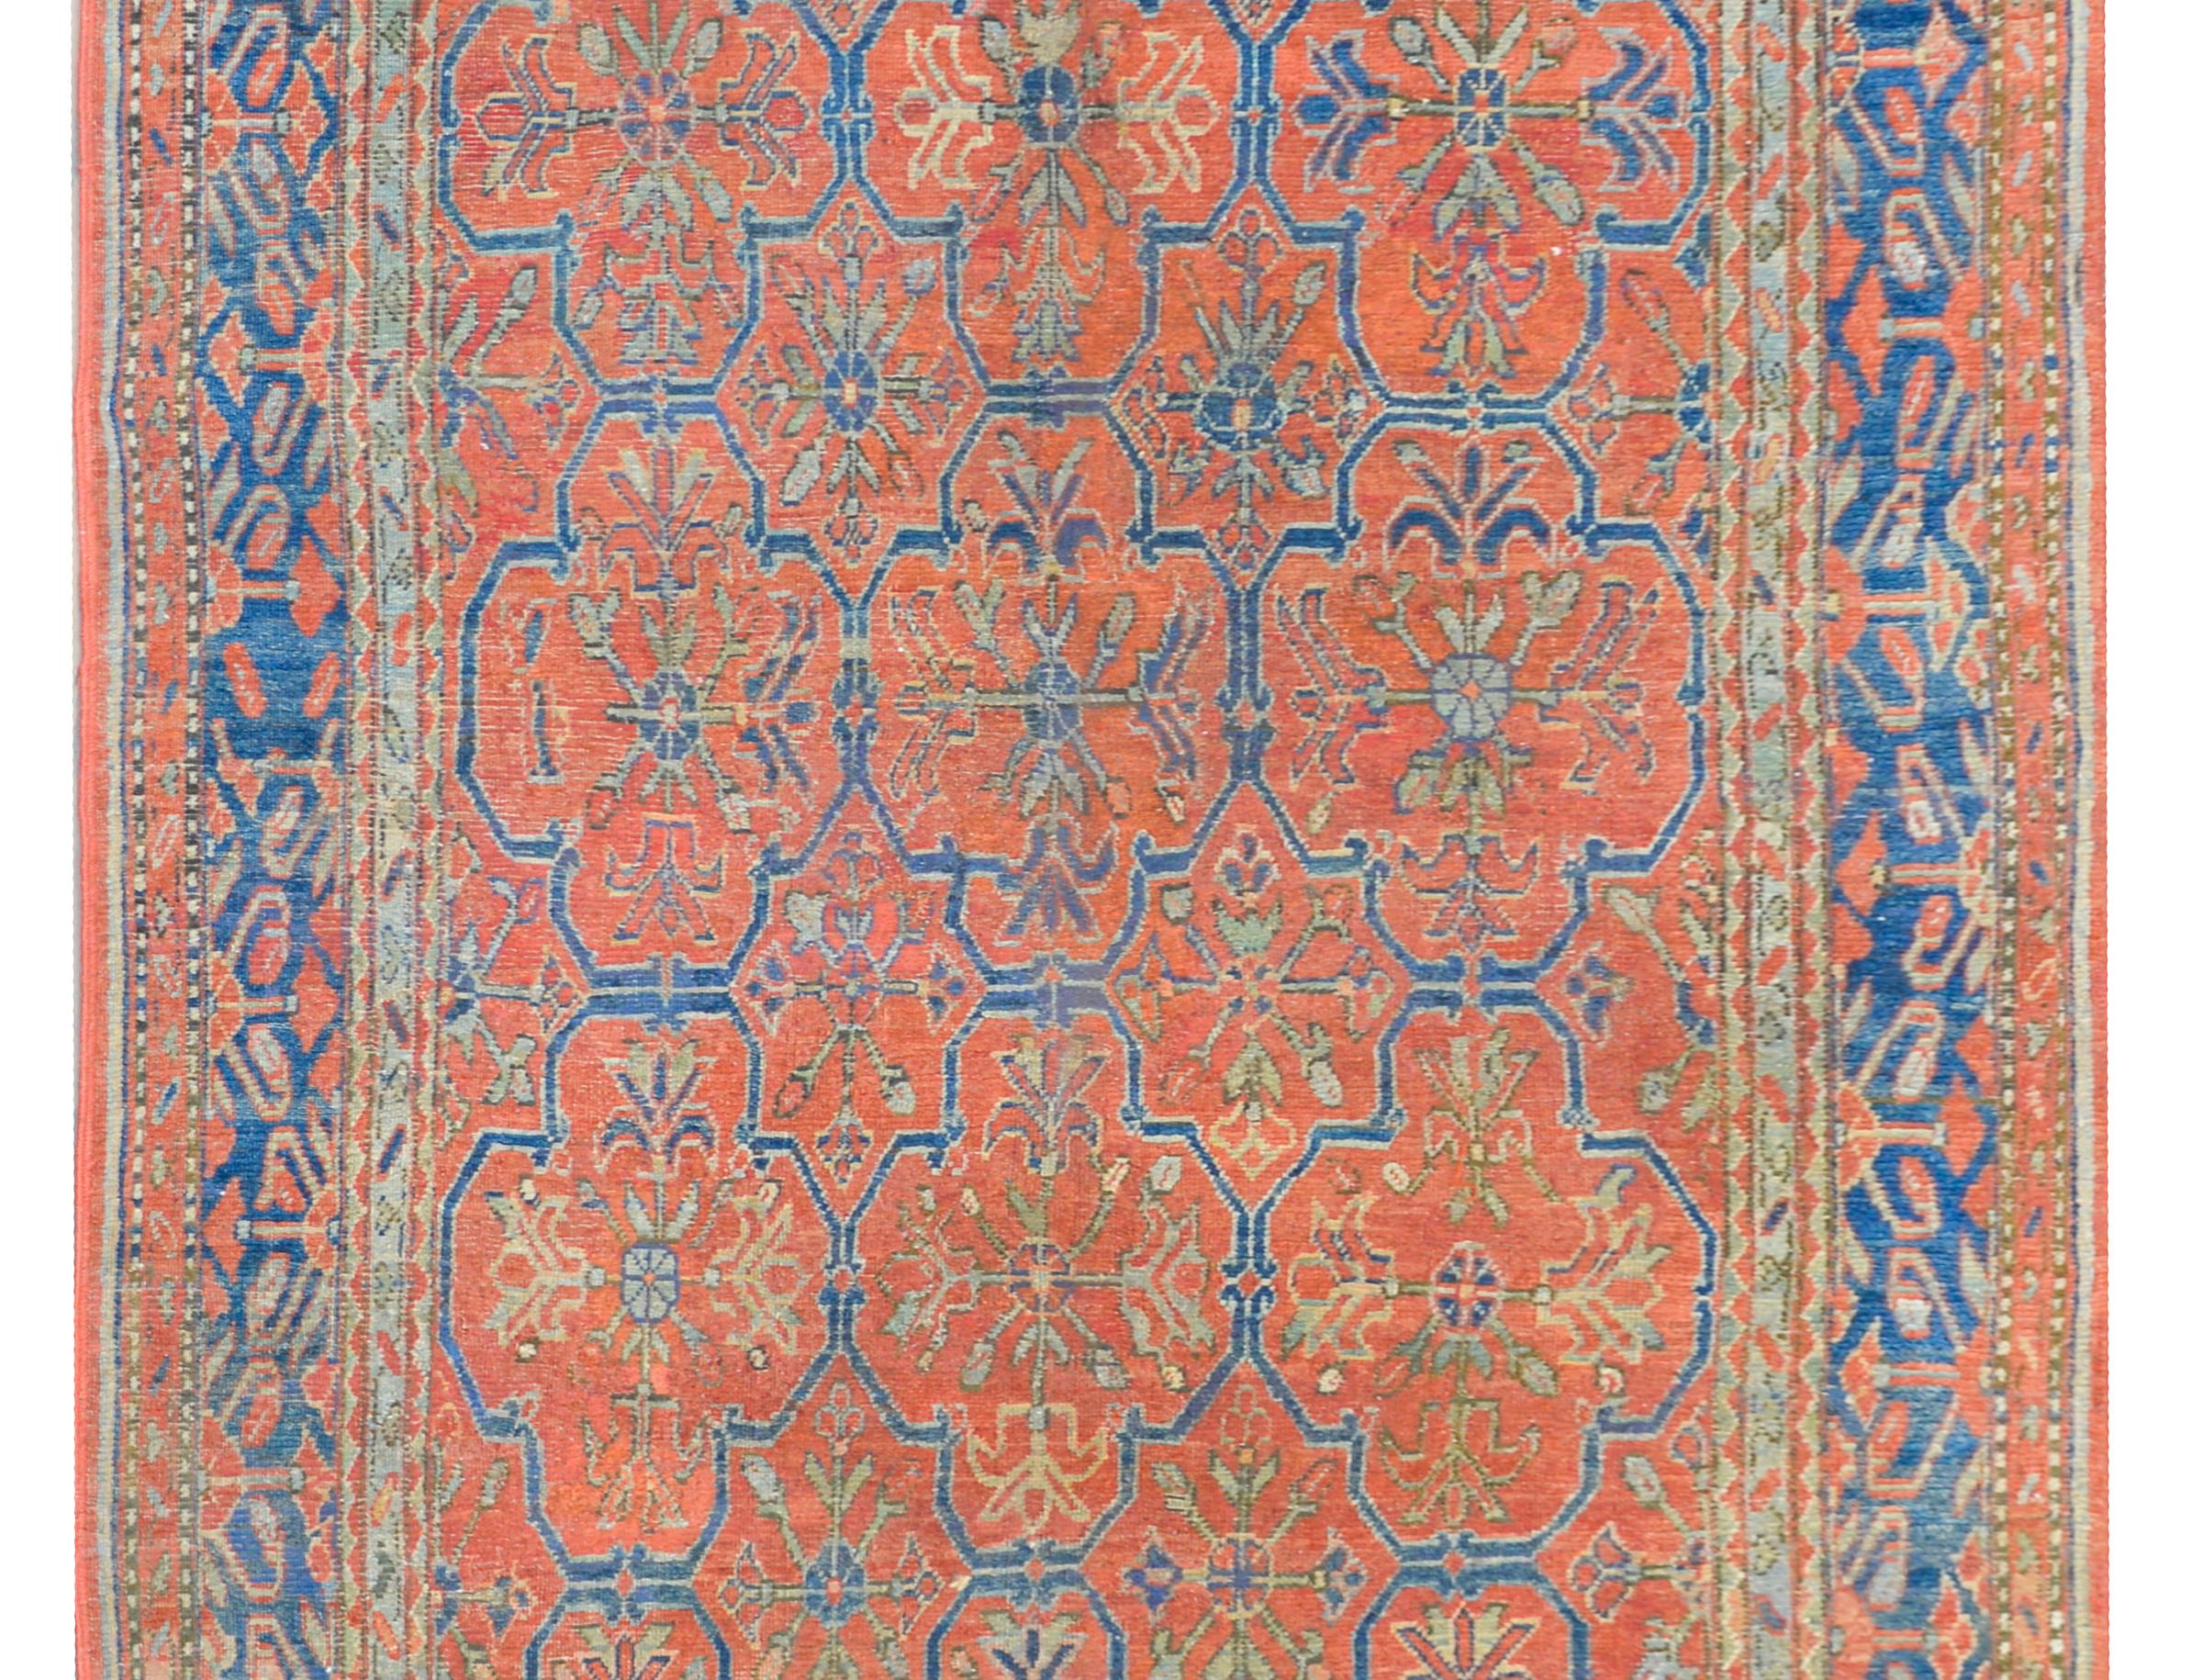 Rare et inhabituel tapis d'Asie centrale du XIXe siècle, présentant un fantastique motif floral en treillis tissé en indigo clair et foncé, jaune et vert, sur un fond cramoisi, et entouré d'une étonnante bordure composée de multiples petites et